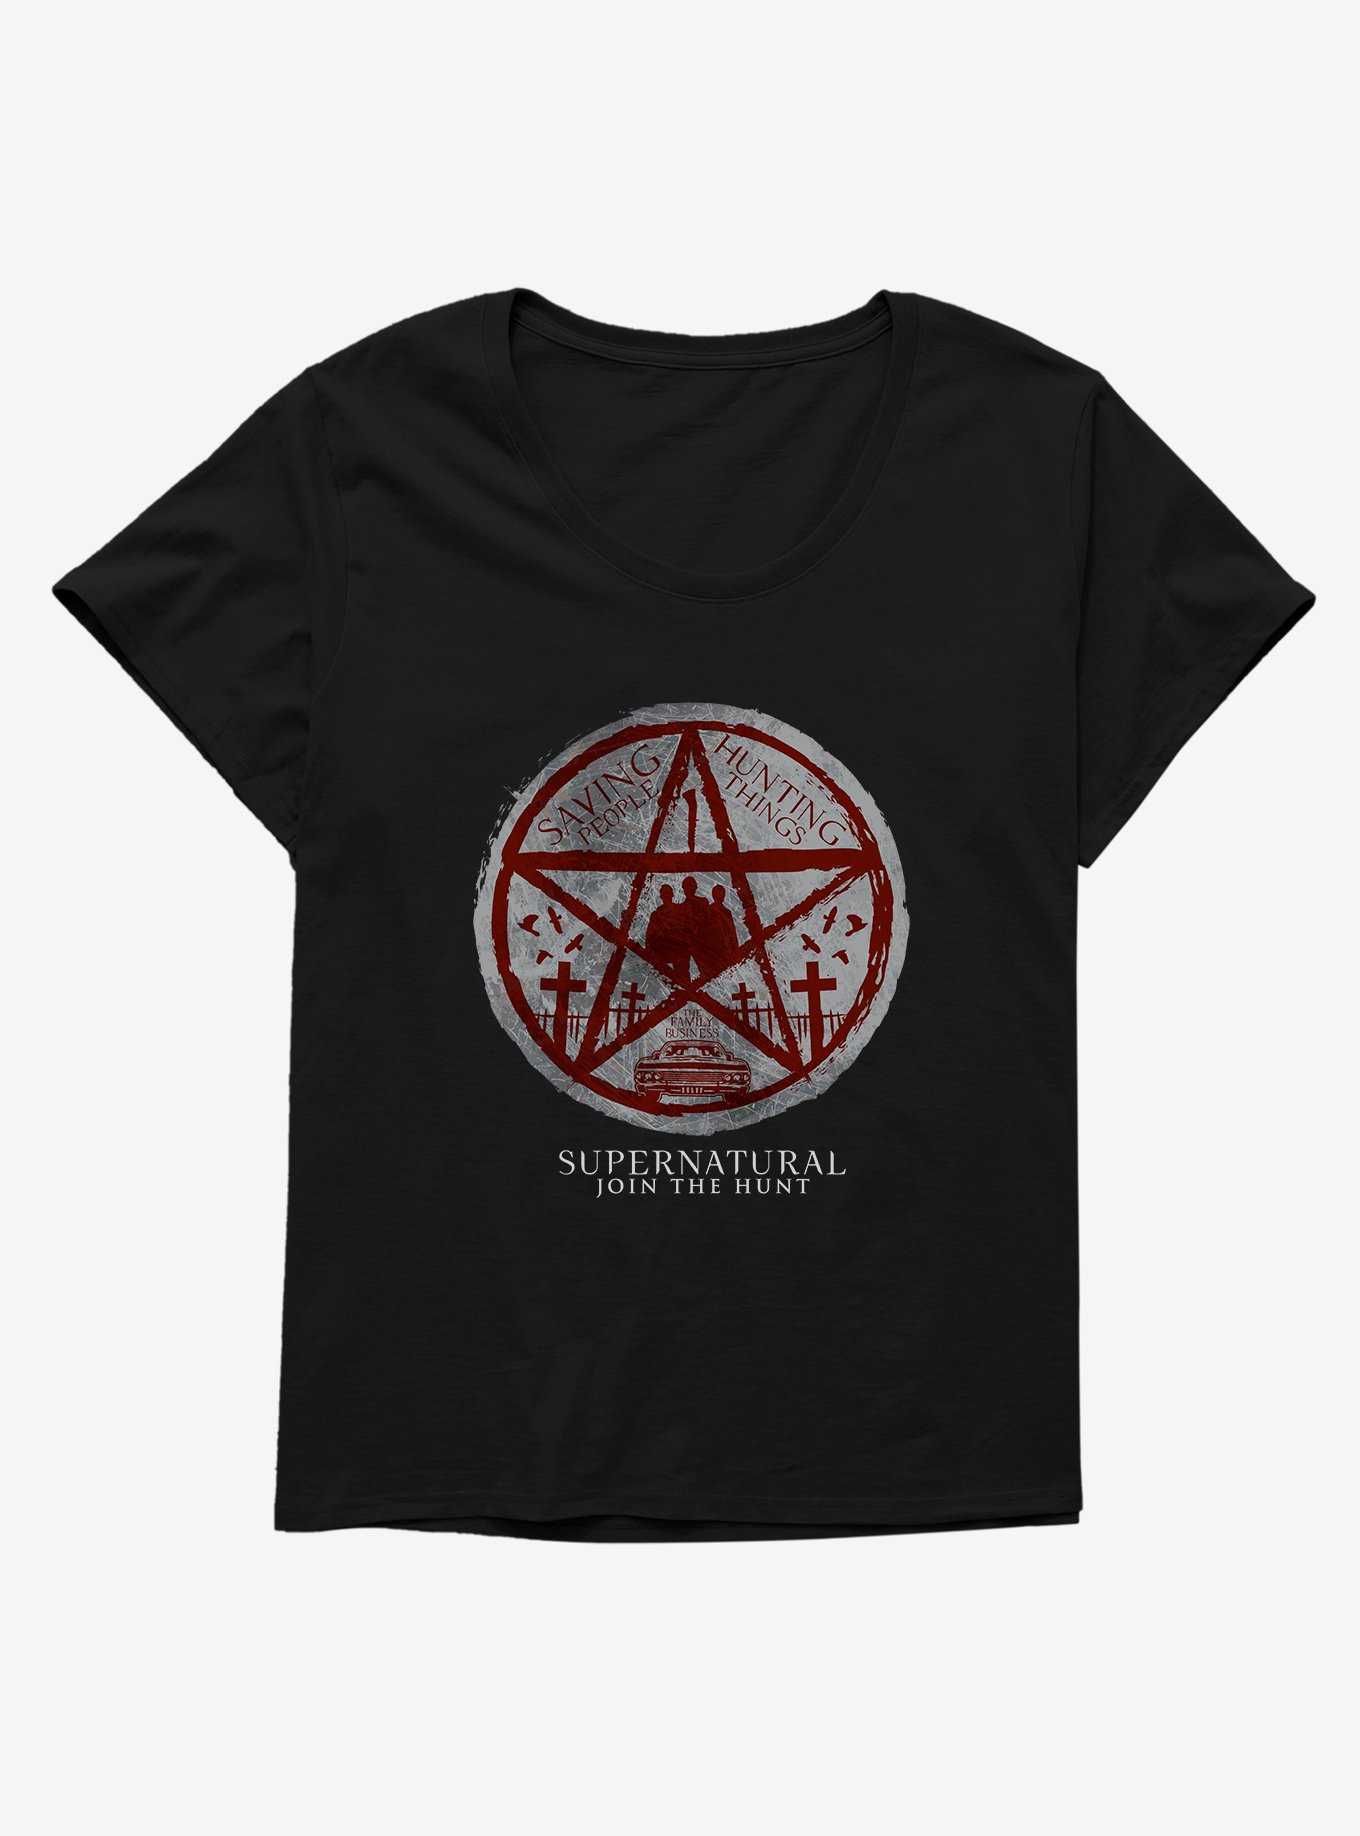 OFFICIAL Supernatural Shirts, Merch & Hoodies